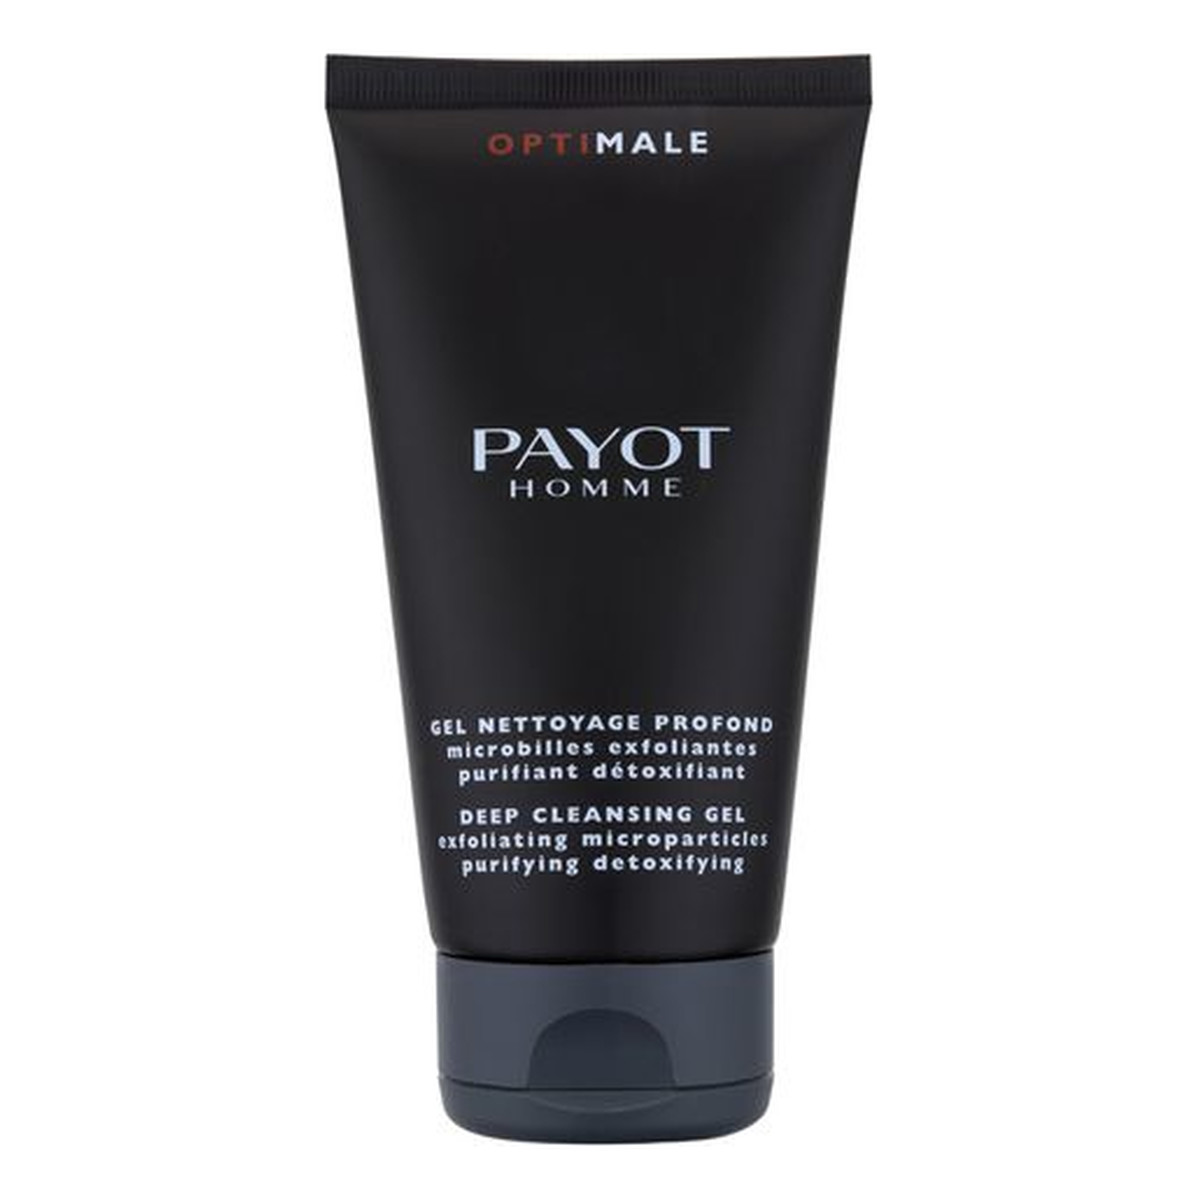 Payot Homme Optimale Gel Nettoyage Profond Exfoliating Microparticles Purifying Detoxifying Głęboko oczyszczający żel do twarzy dla mężczyzn 150ml